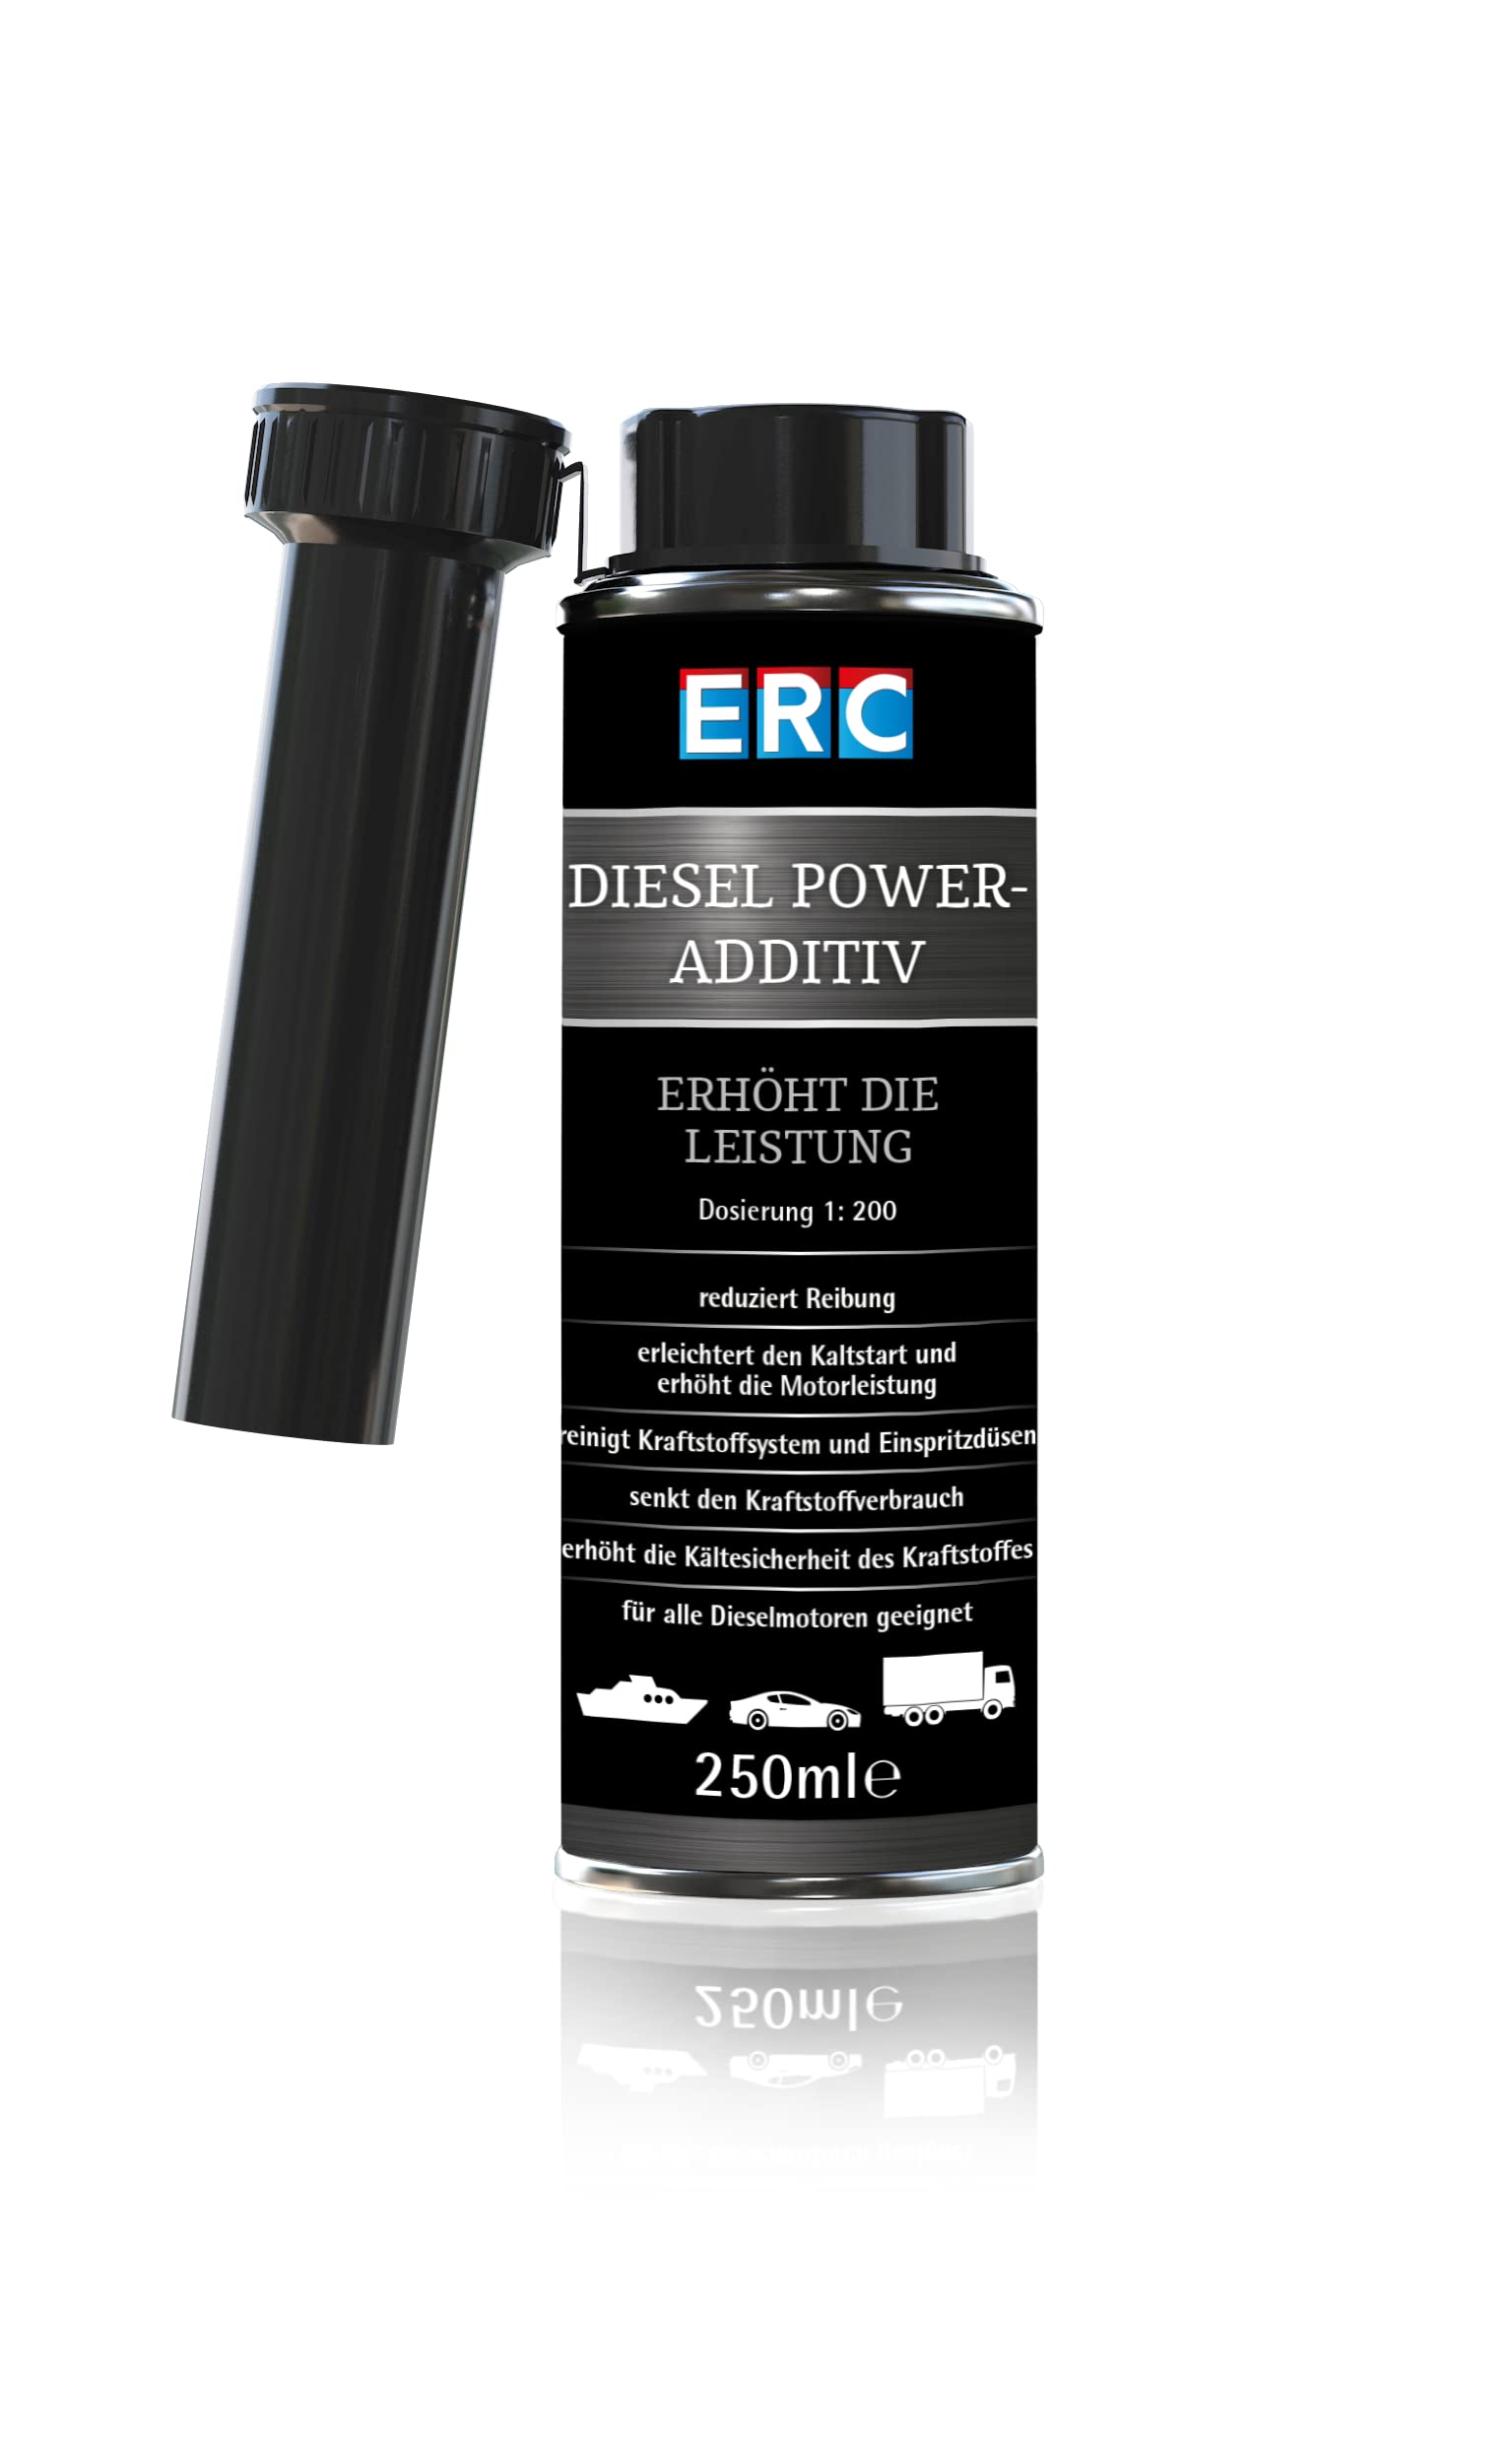 ERC Diesel Power-Additiv 250ml Dose für 40-60 Liter Diesel, mit Friction Modifier, Verbesserung der Beschleunigung von ERC